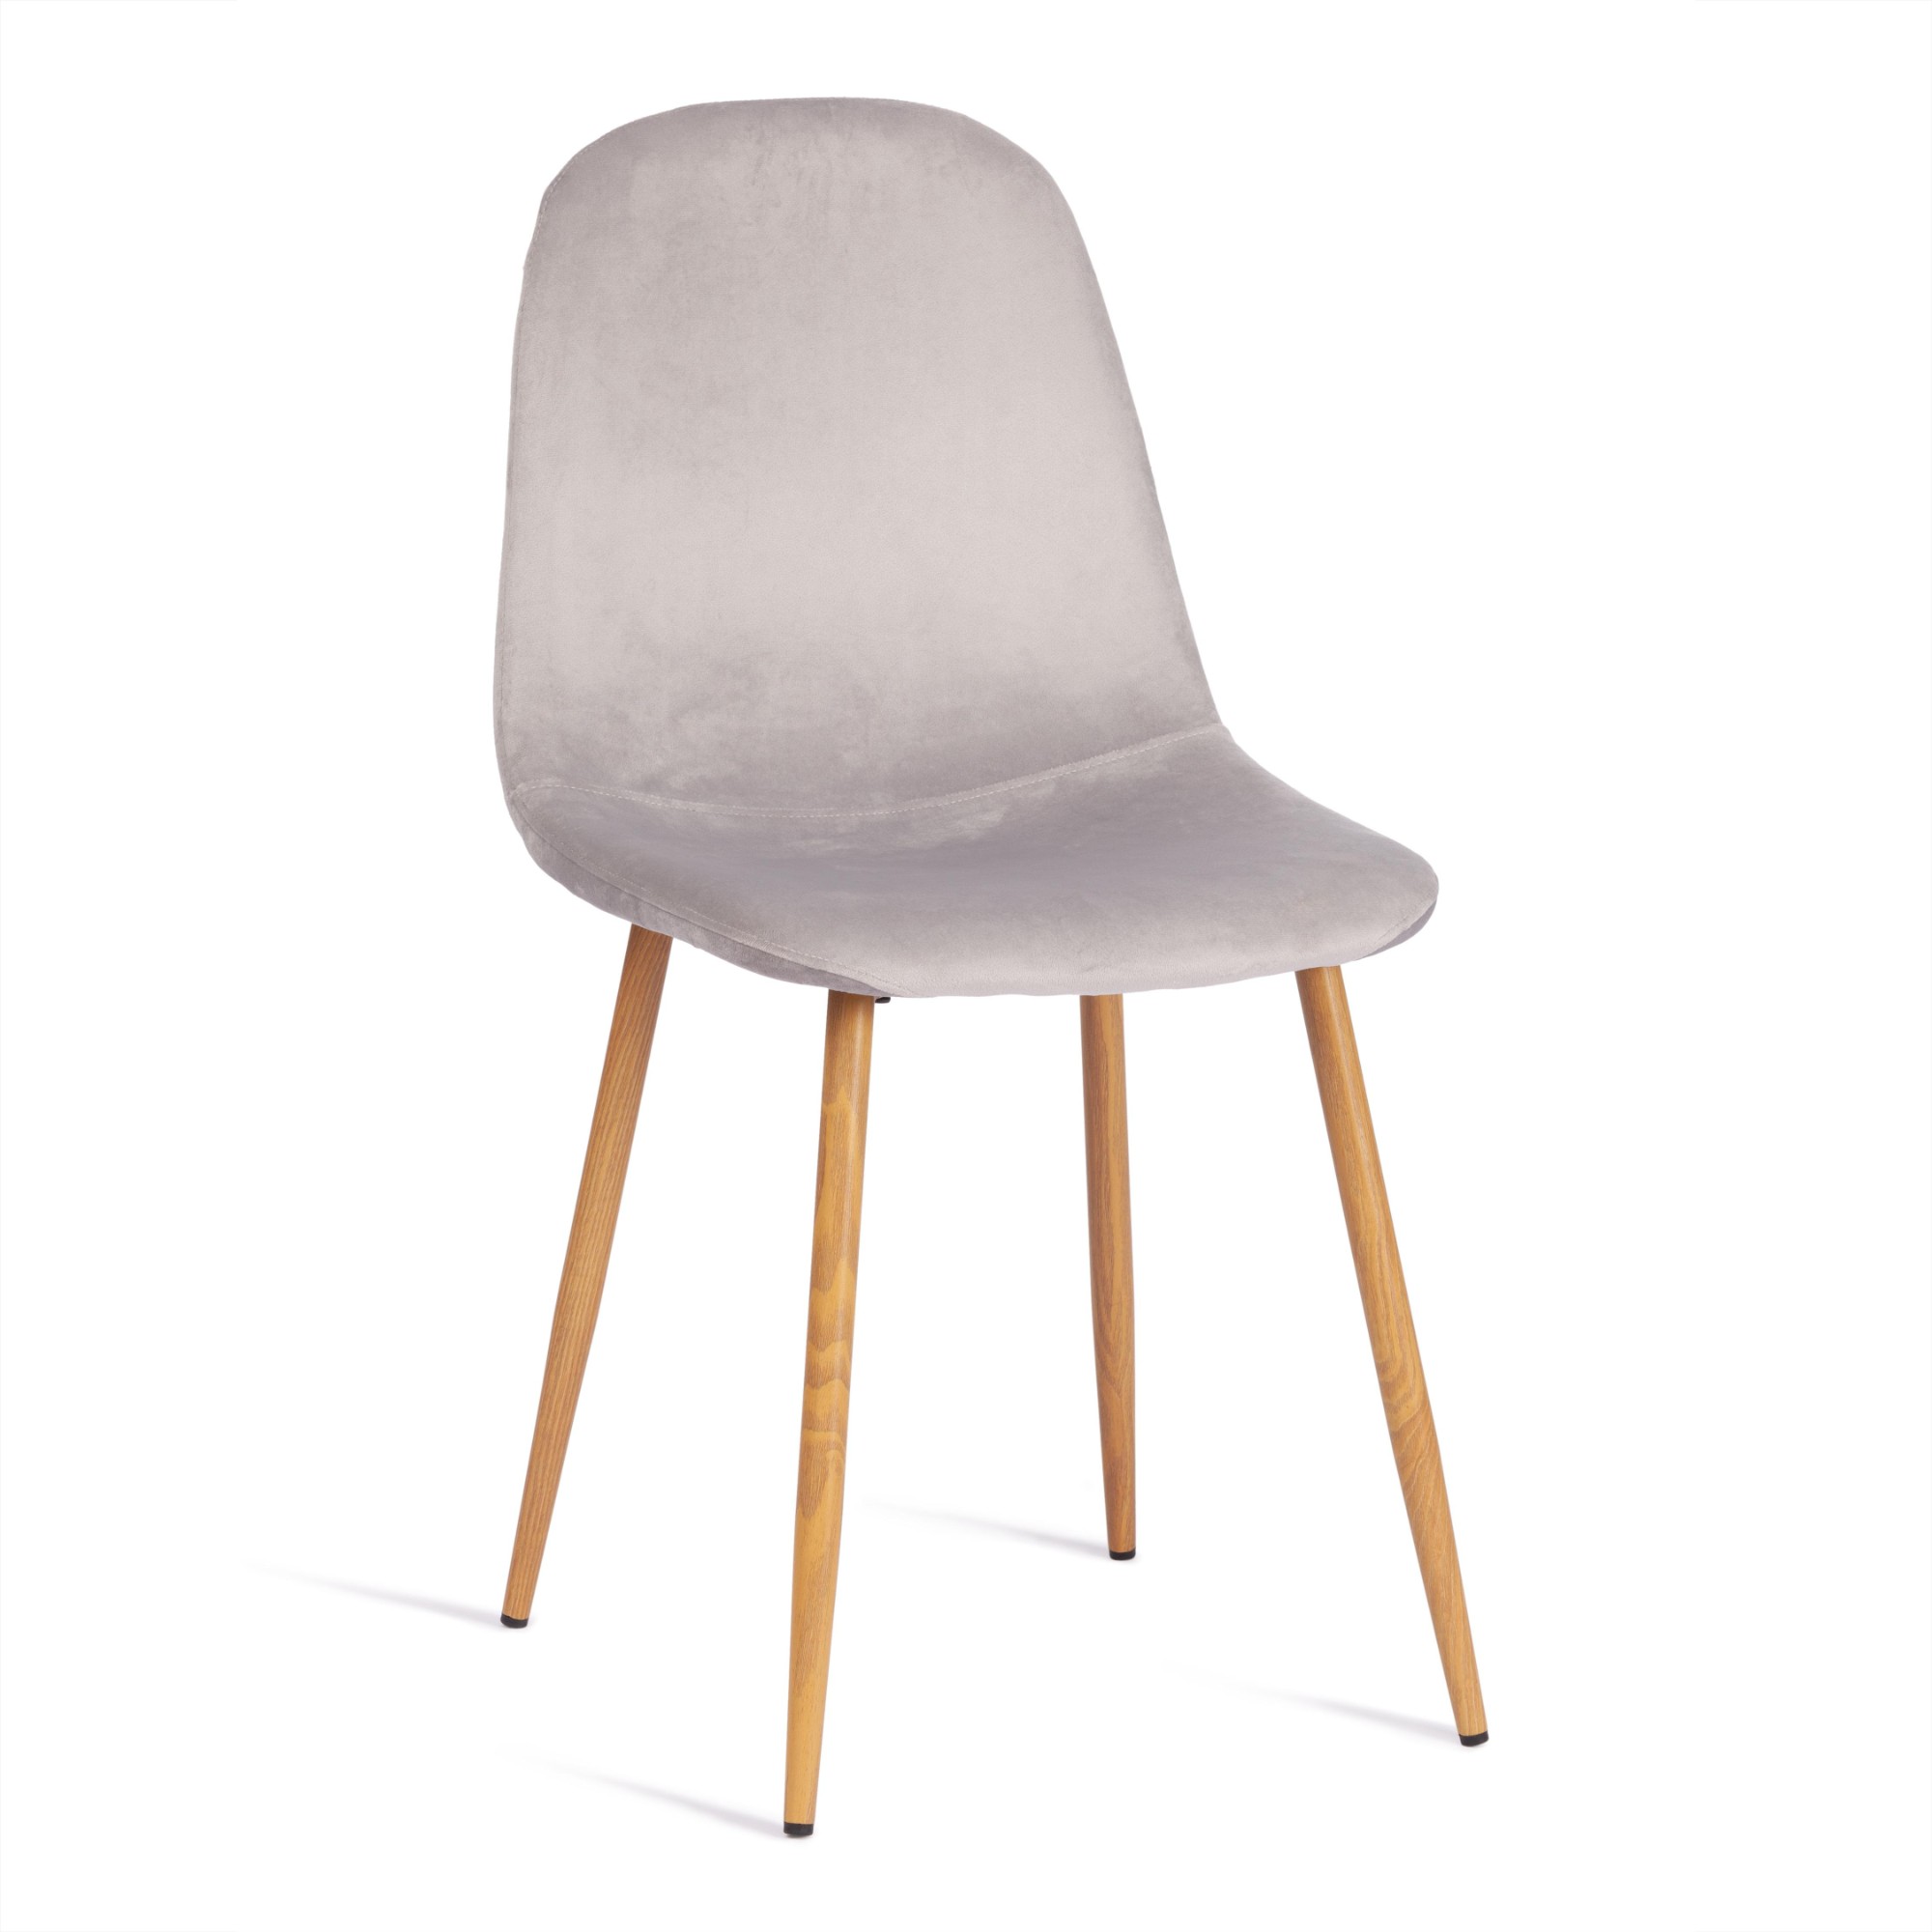 Стул TC натуральный серый вельвет, металл 44х53х87 см стул стул венера кремовый вельвет